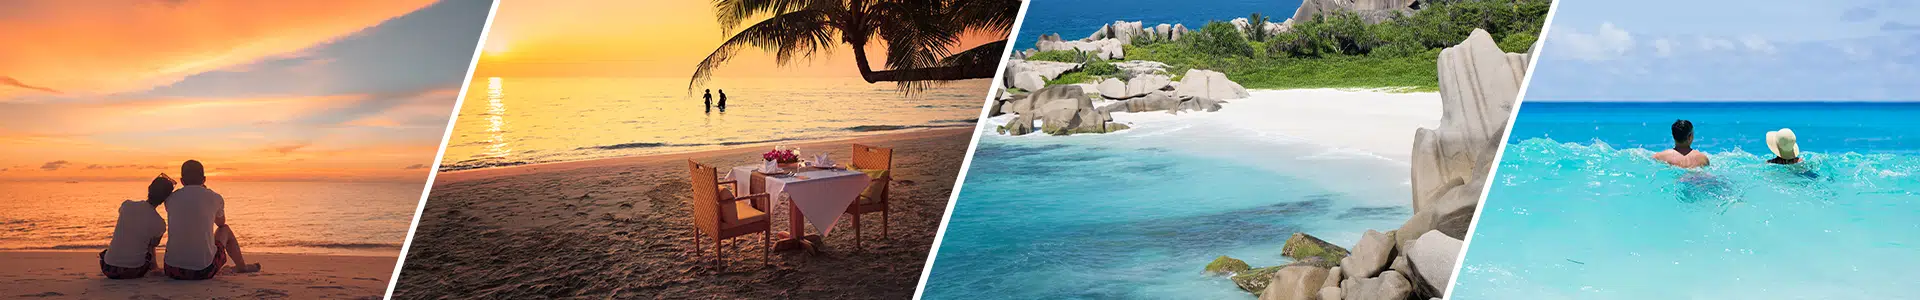 Seychelles Honeymoon Packages